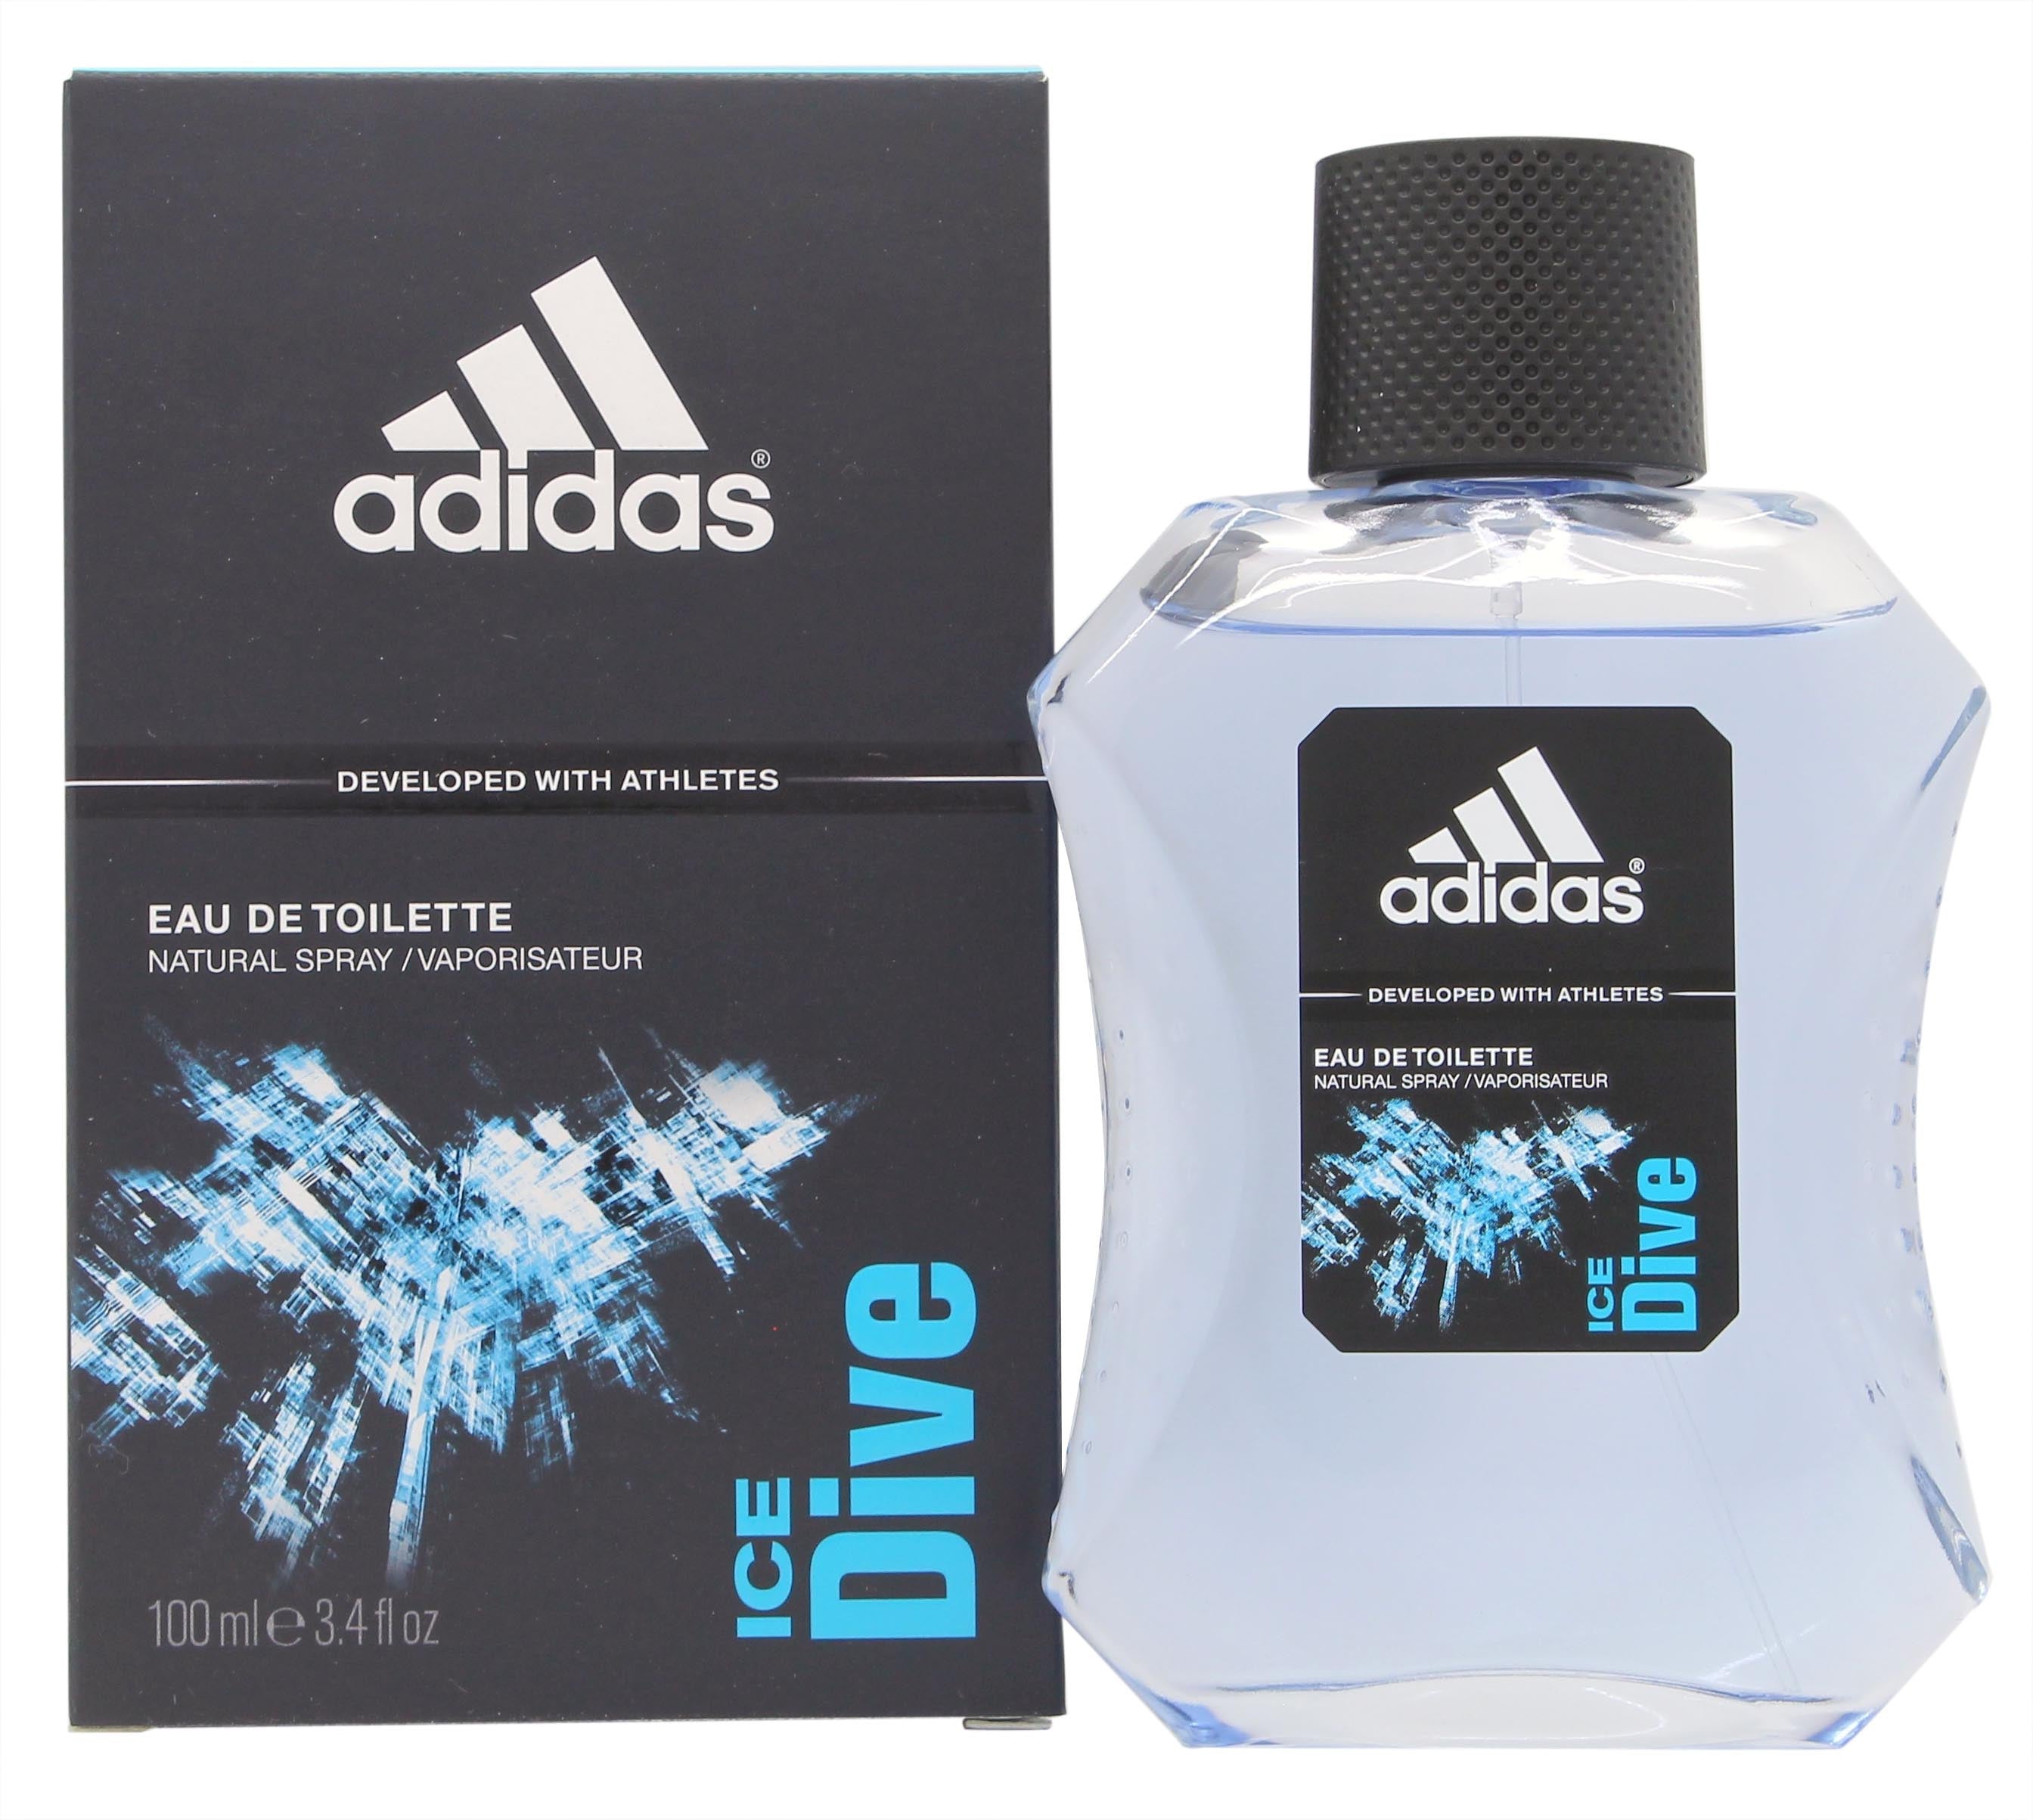 View Adidas Ice Dive Eau de Toilette 100ml Spray information